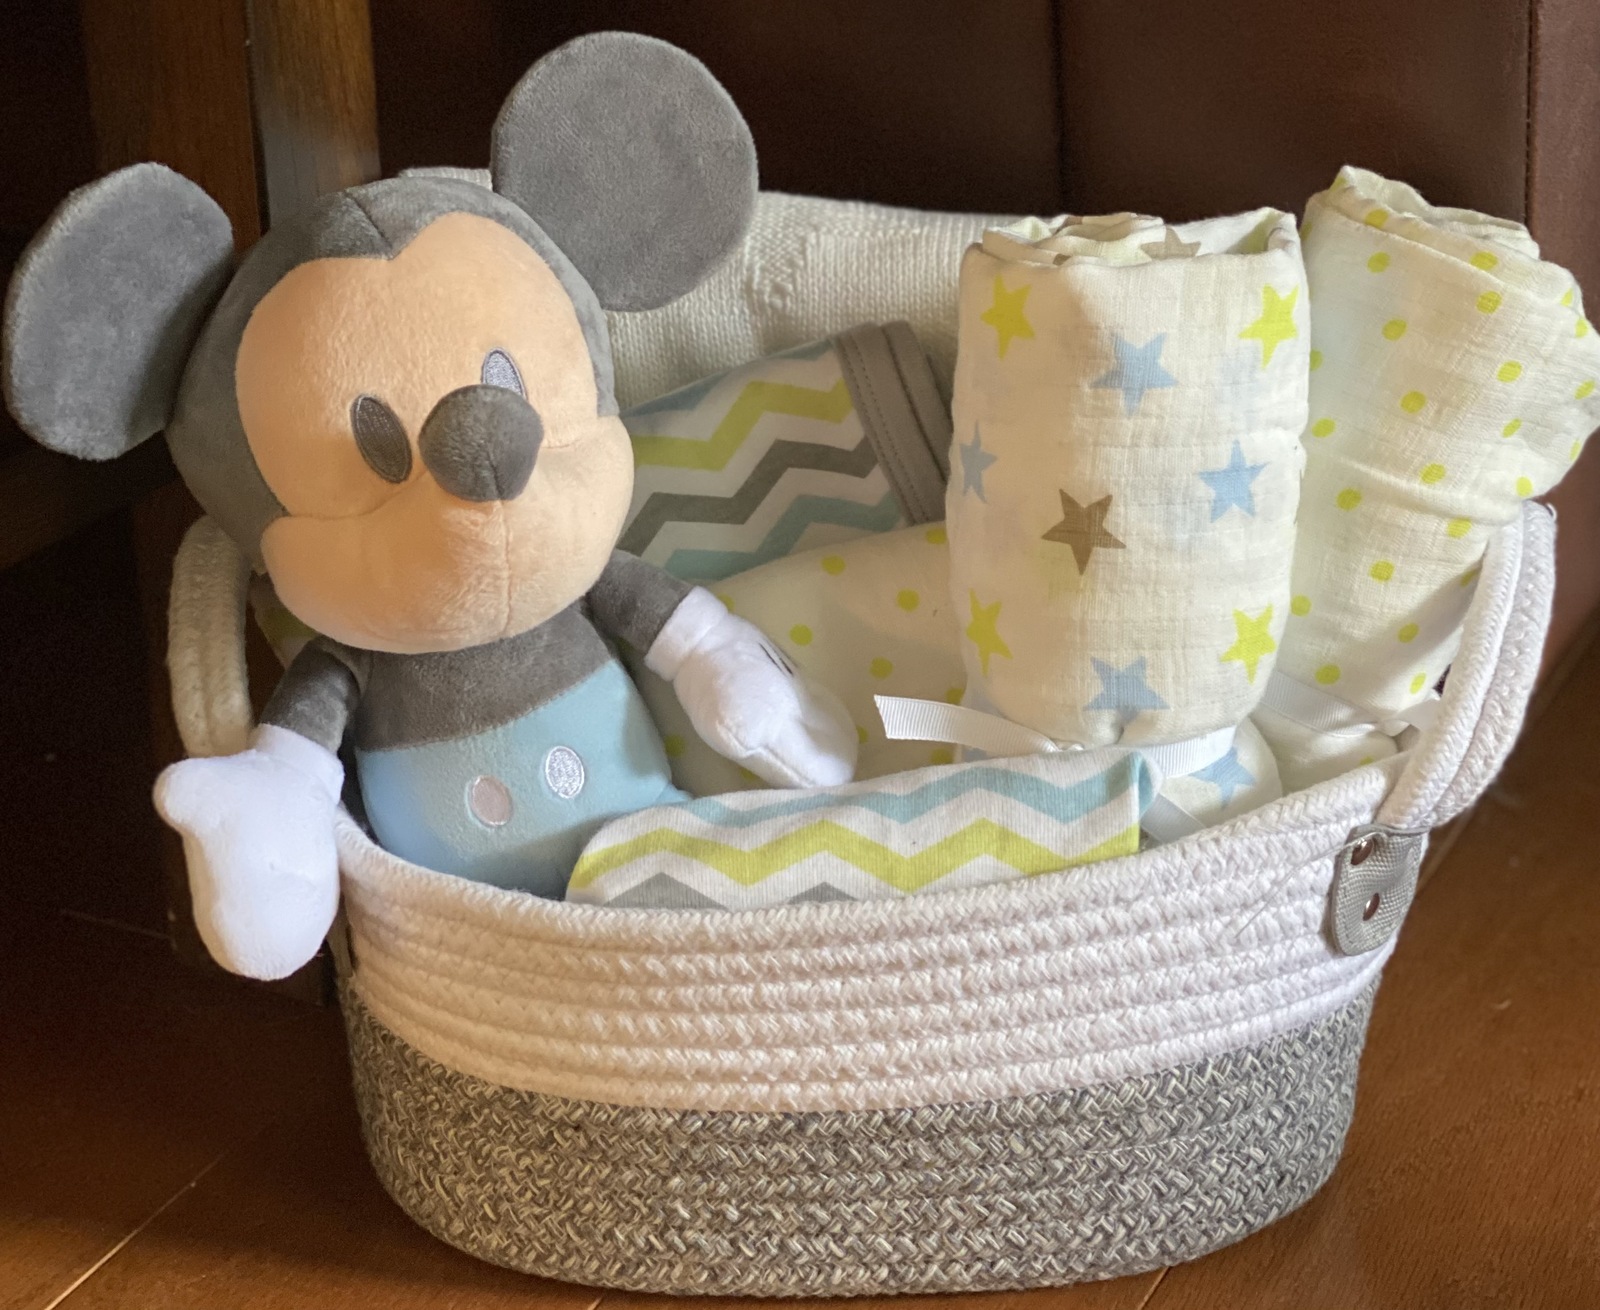 Disney Baby Mickey Gift Basket - $75.00